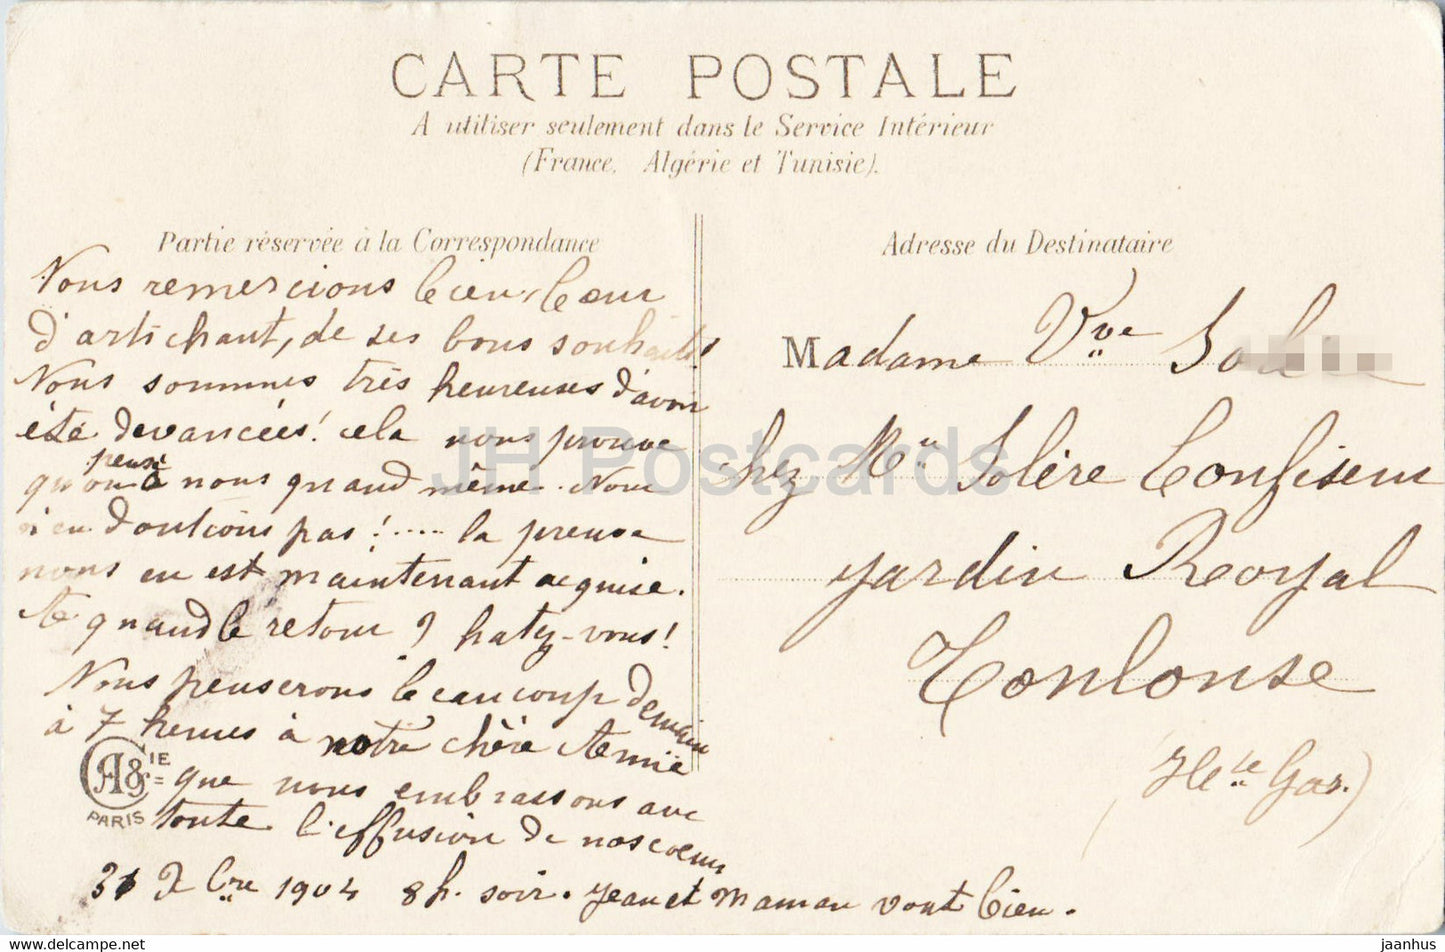 Carte de voeux du Nouvel An - Bonne Annee - femme - carte postale ancienne - 1904 - France - utilisée